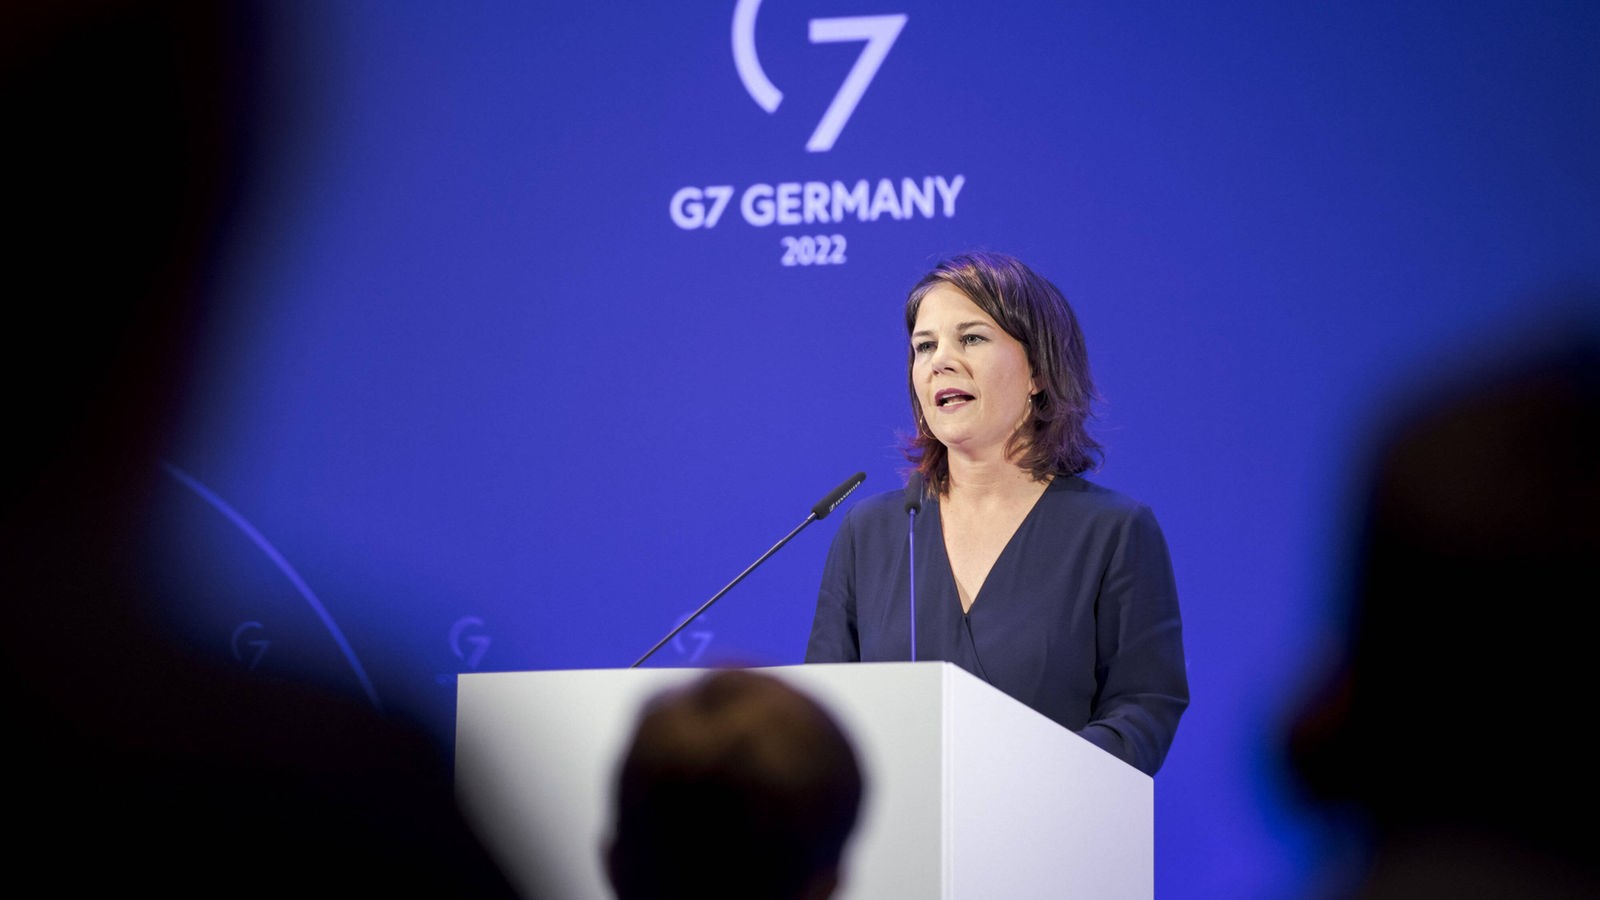 Ticker da leggere: la riunione del G7 a Münster si conclude con una conferenza stampa – Westfalia-Lippe – Notizie